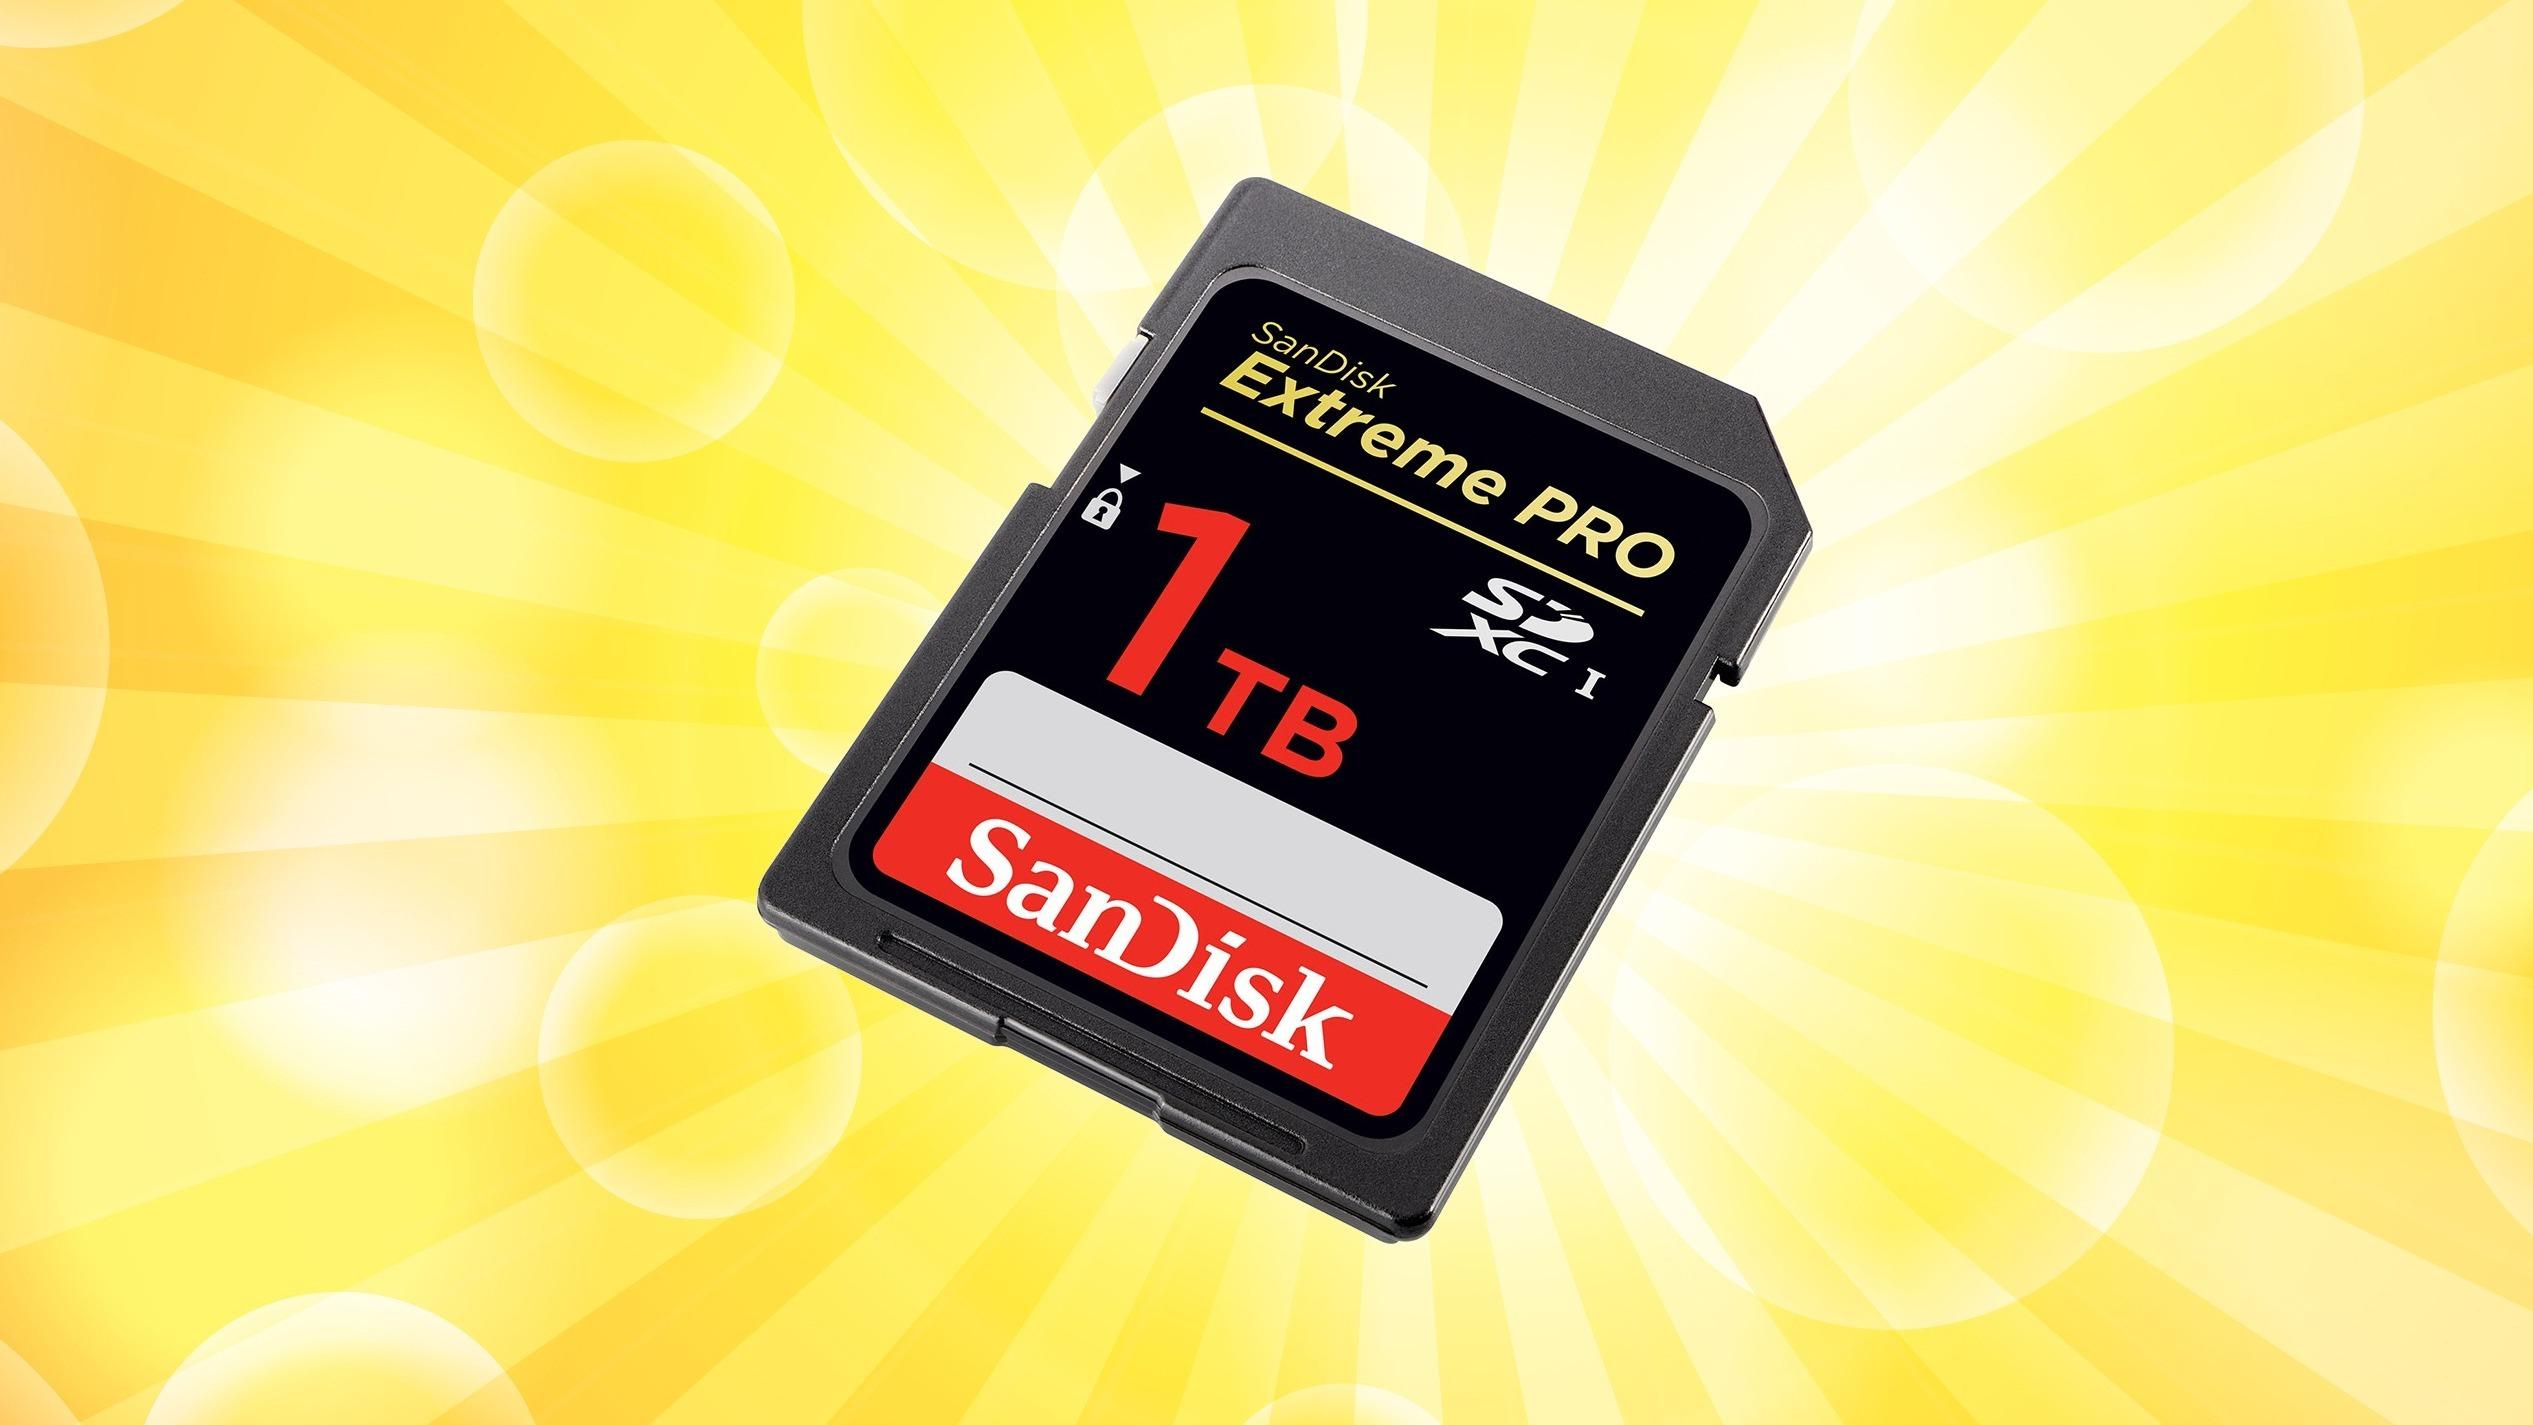 Nå har SanDisk avduket et minnekort på én terabyte